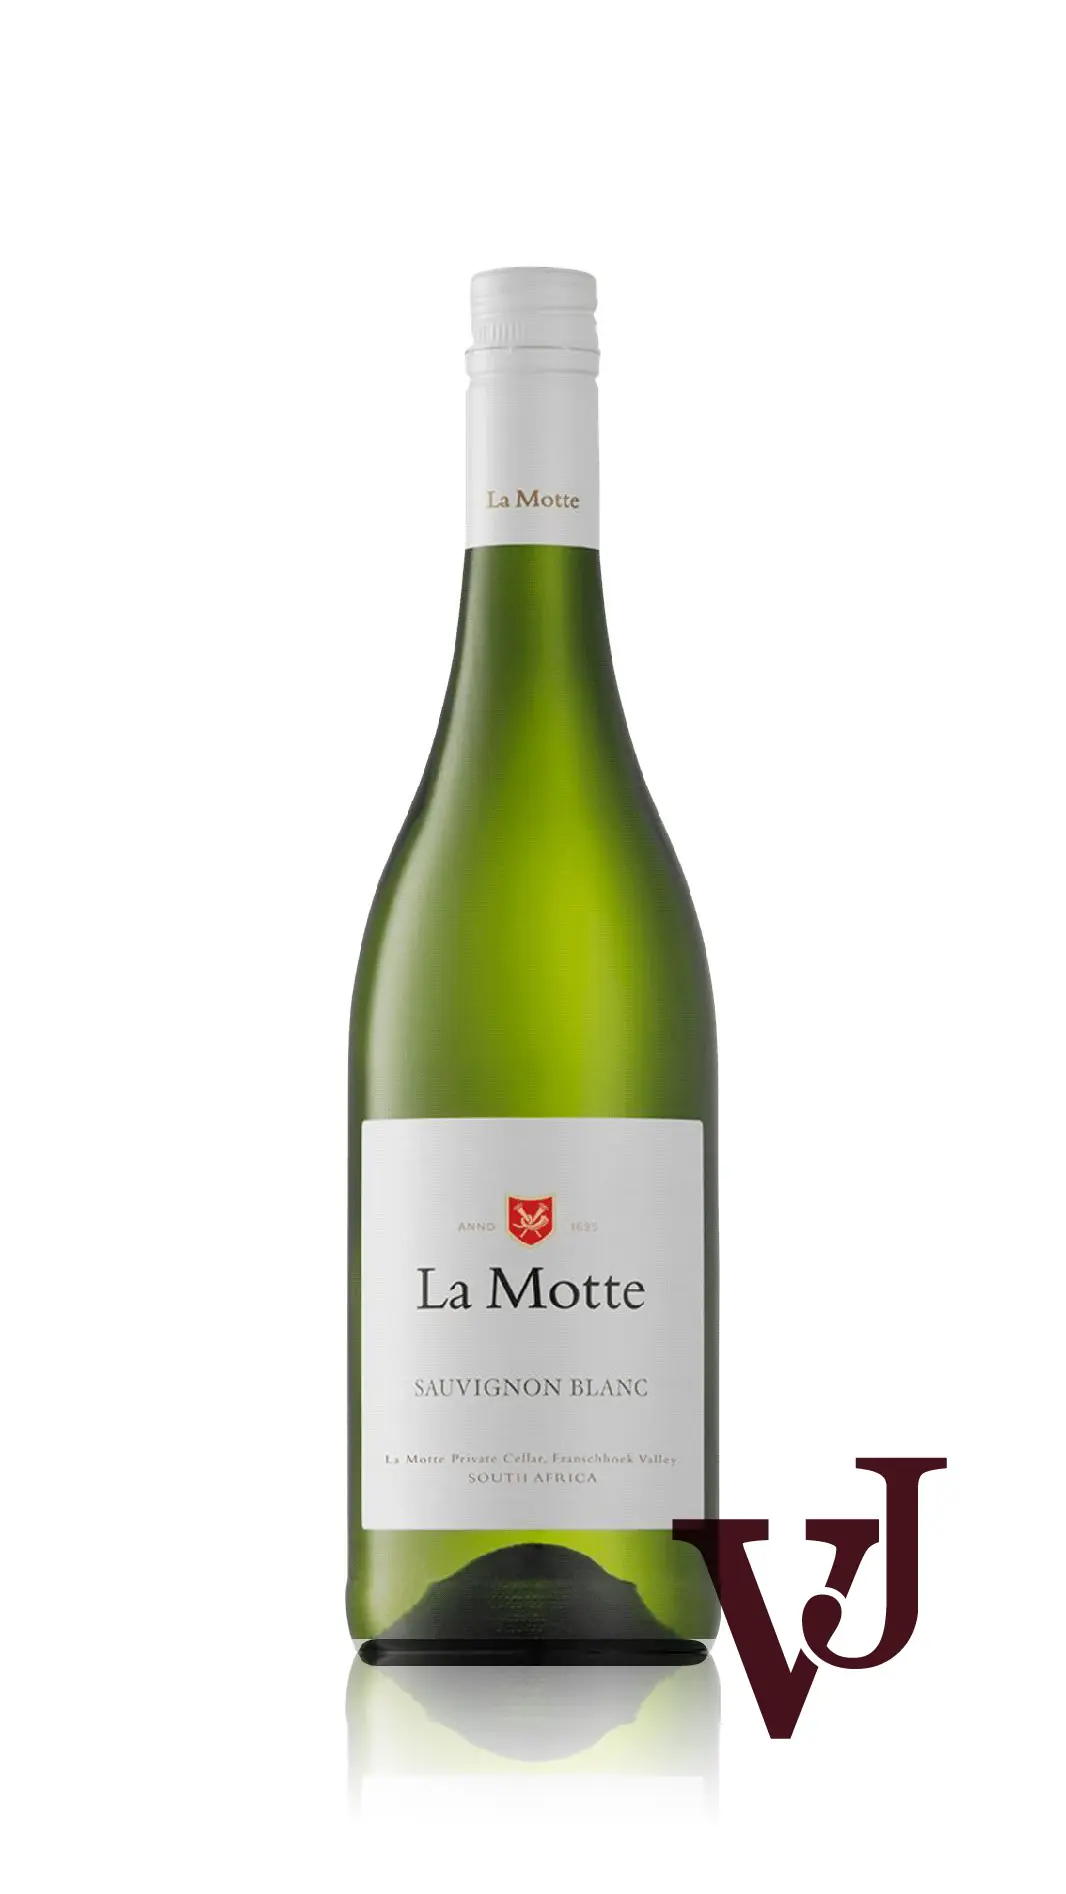 Vitt Vin - La Motte Sauvignon Blanc artikel nummer 7588201 från producenten La Motte Estate från området Sydafrika - Vinjournalen.se